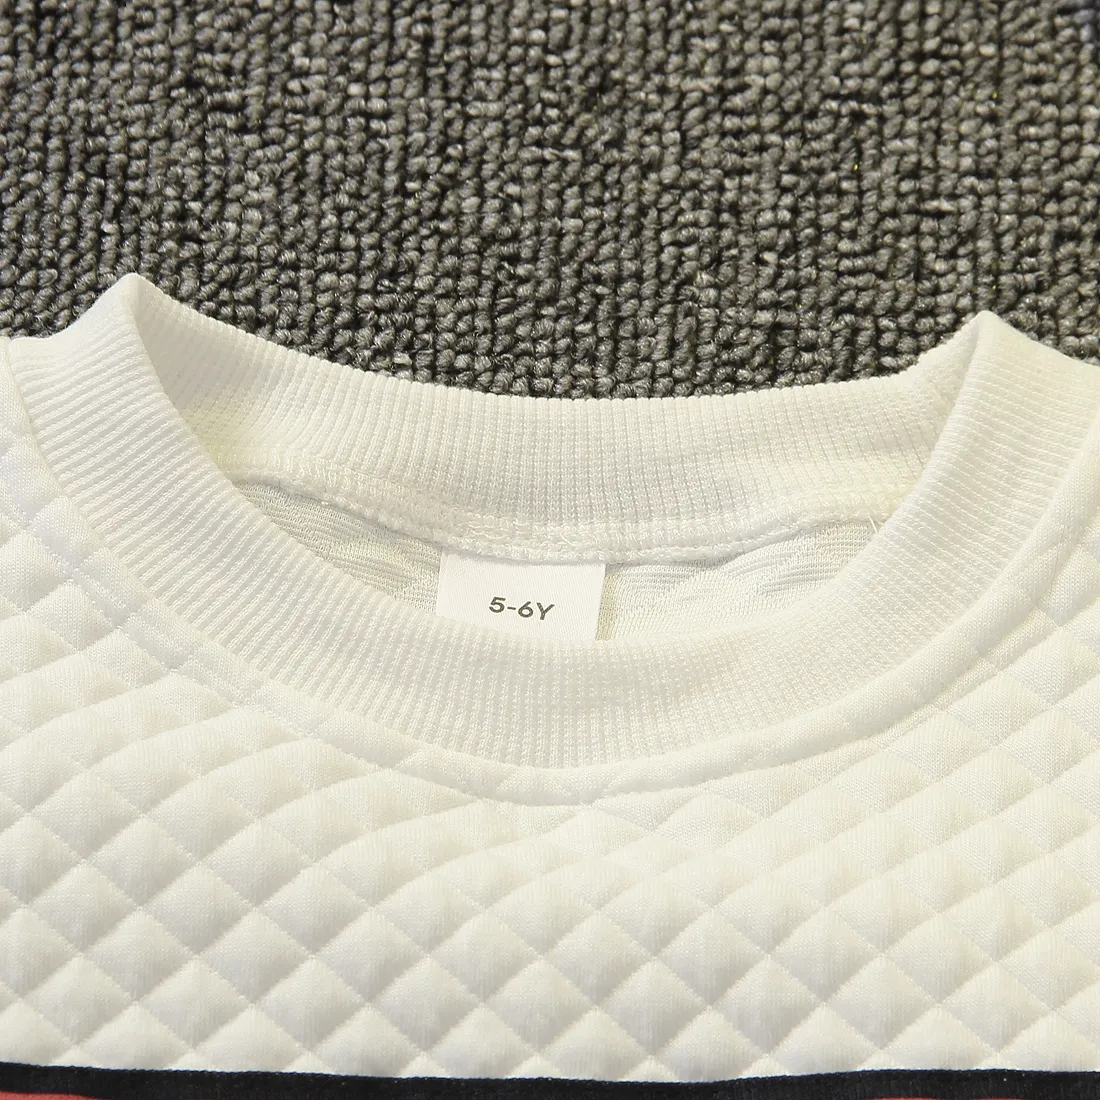 Kinder Unisex Borte Unifarben Pullover Sweatshirts weiß big image 1